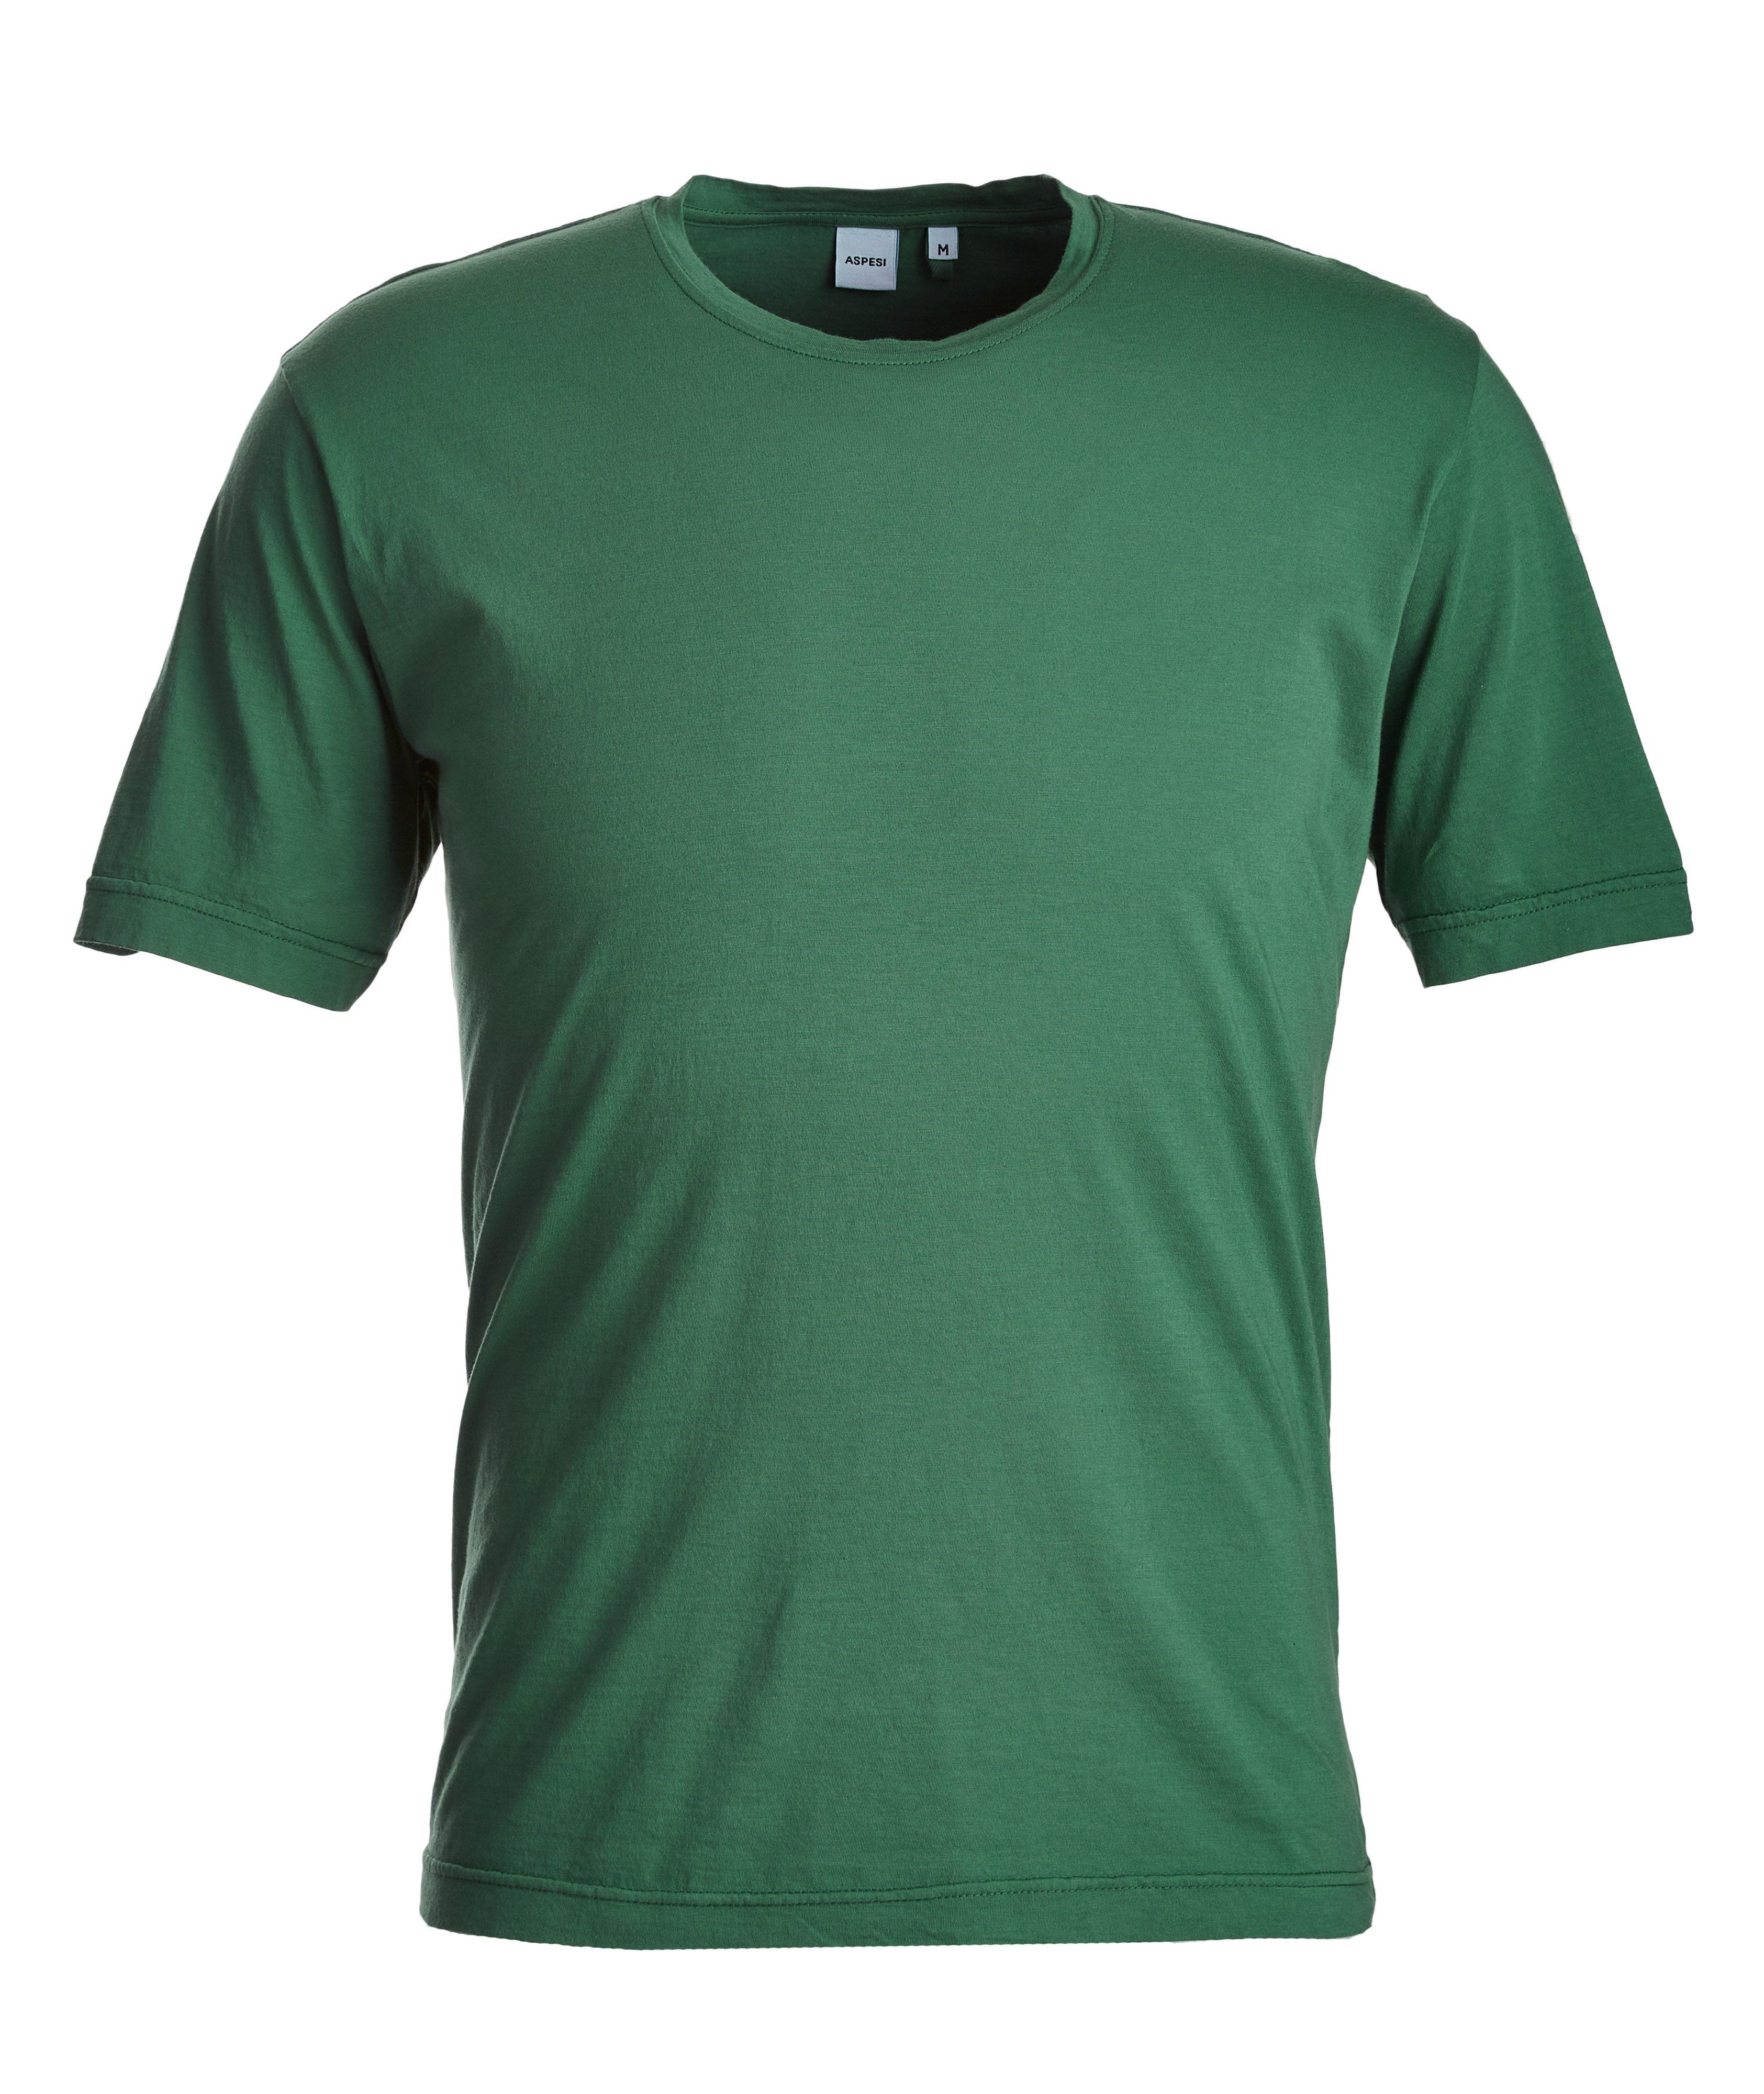 Slim-Fit Cotton T-Shirt image 0